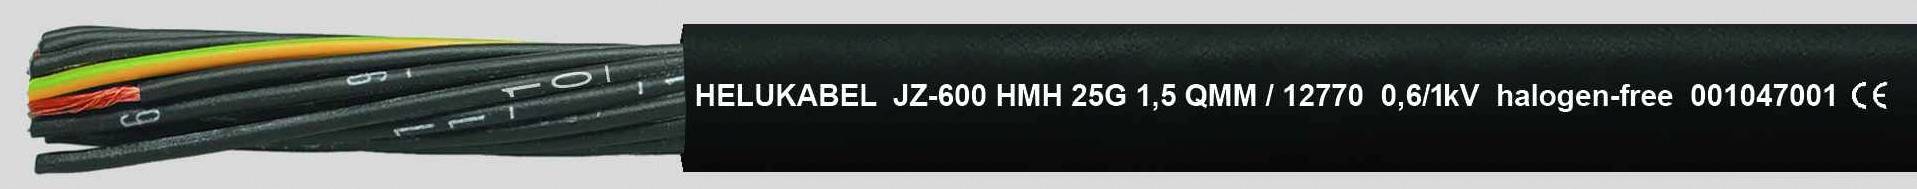 HELUKABEL JZ-600 HMH Steuerleitung 7 G 1.50 mm² Schwarz 12766-500 500 m